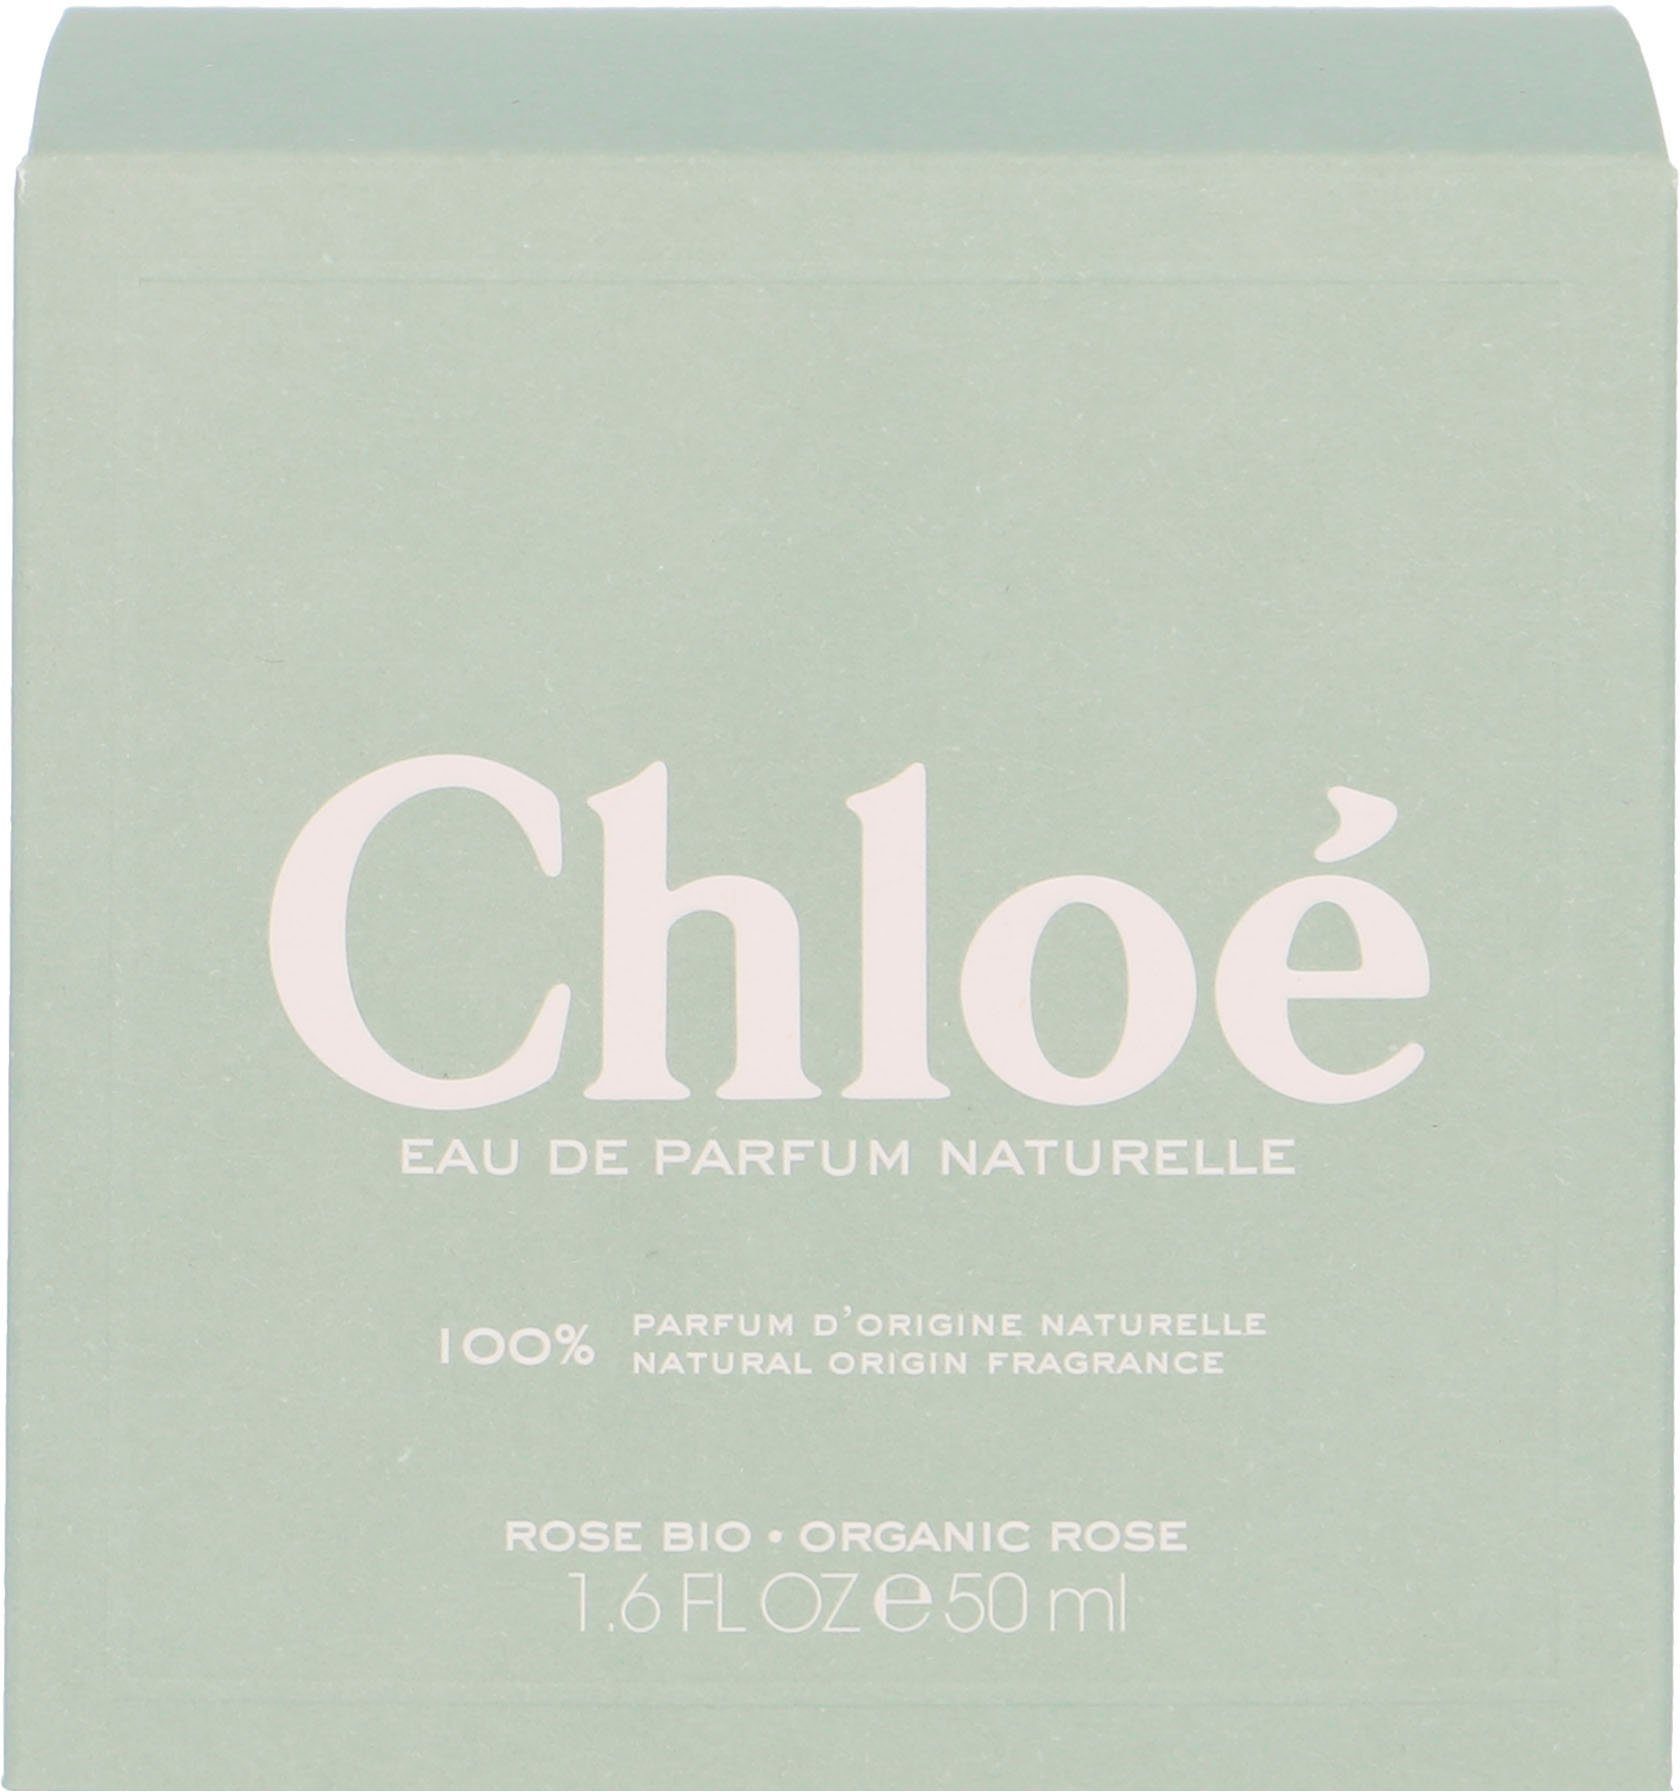 Chloé Eau de Parfum Signature Naturelle